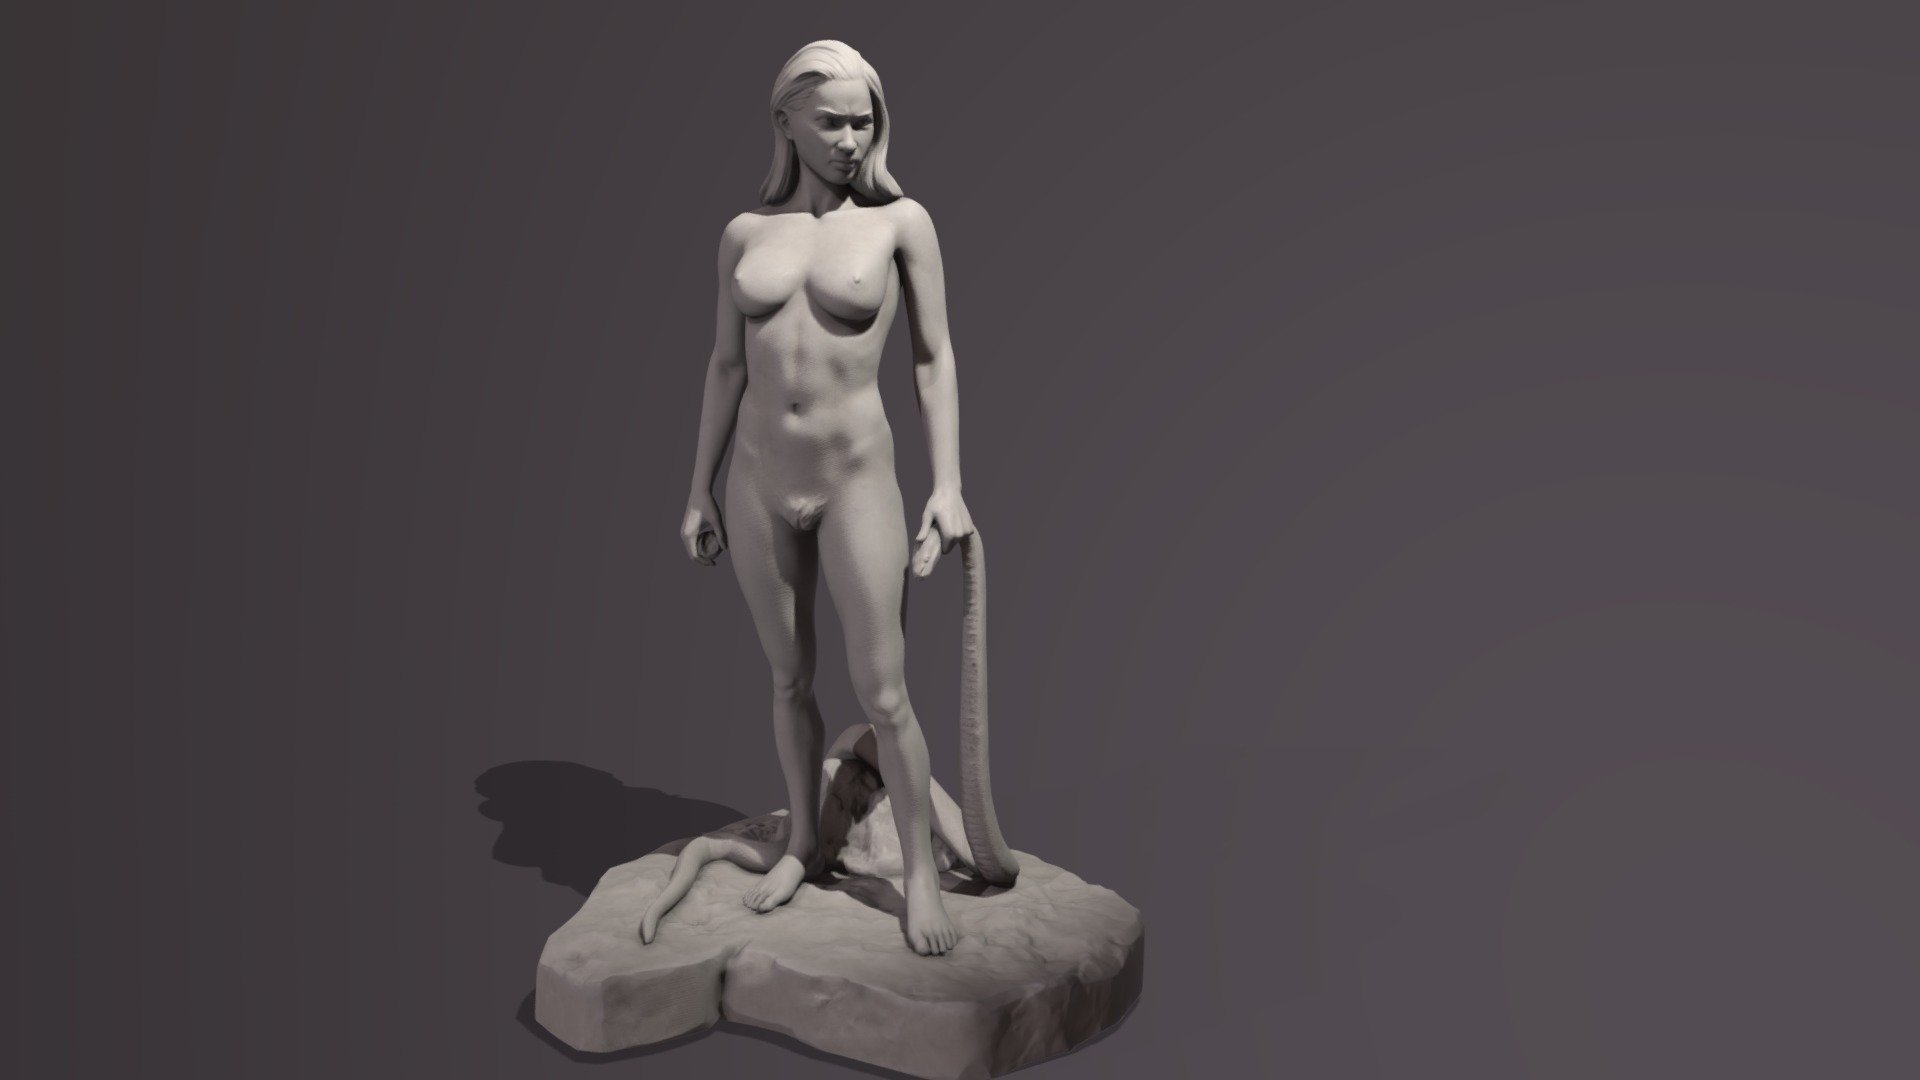 Female anatomy study.

Some Cycles renders on my artstation page here:
https://www.artstation.com/artwork/2xO0Lx - Eve - 3D model by Julian Santiago (@julSan) 3d model